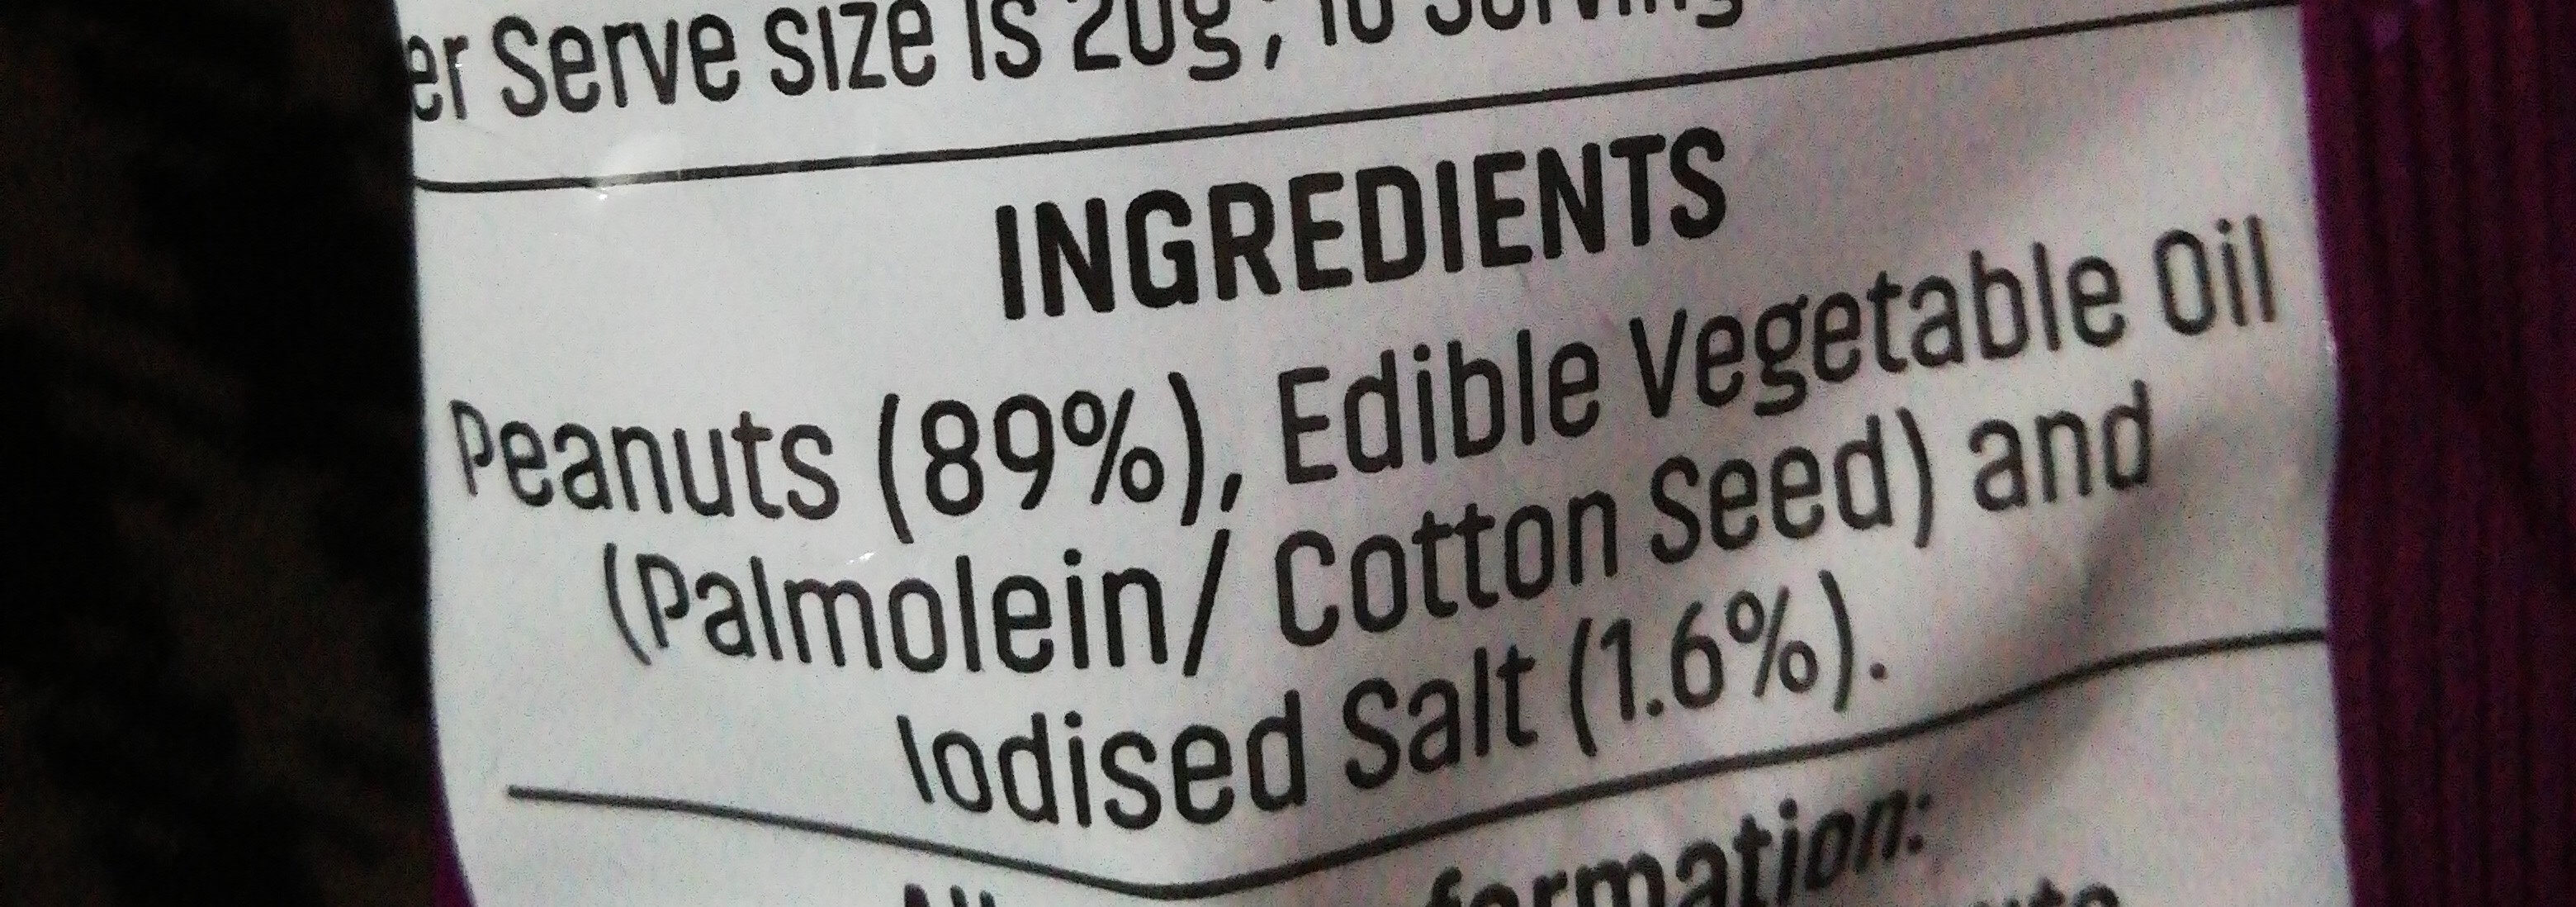 Salted peanuts - Ingredients